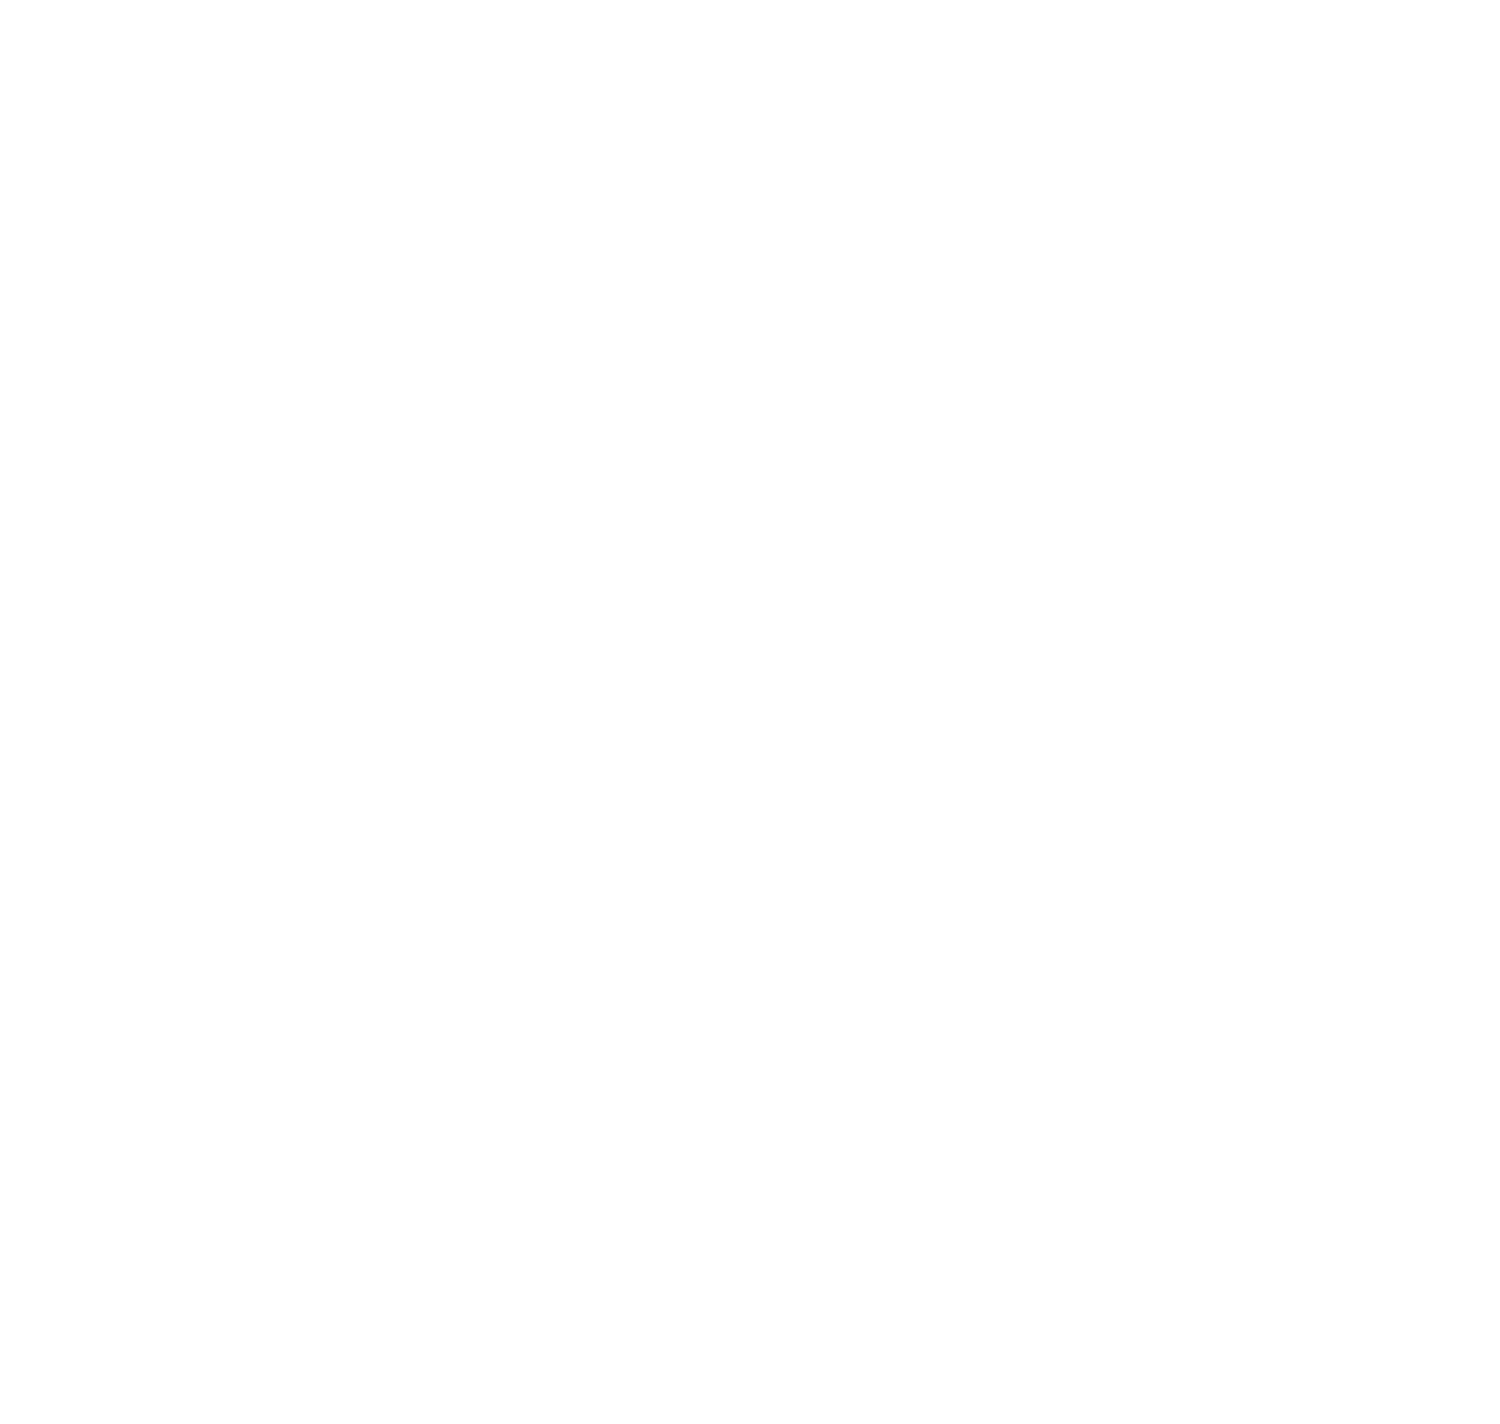 DrewBoy Creative